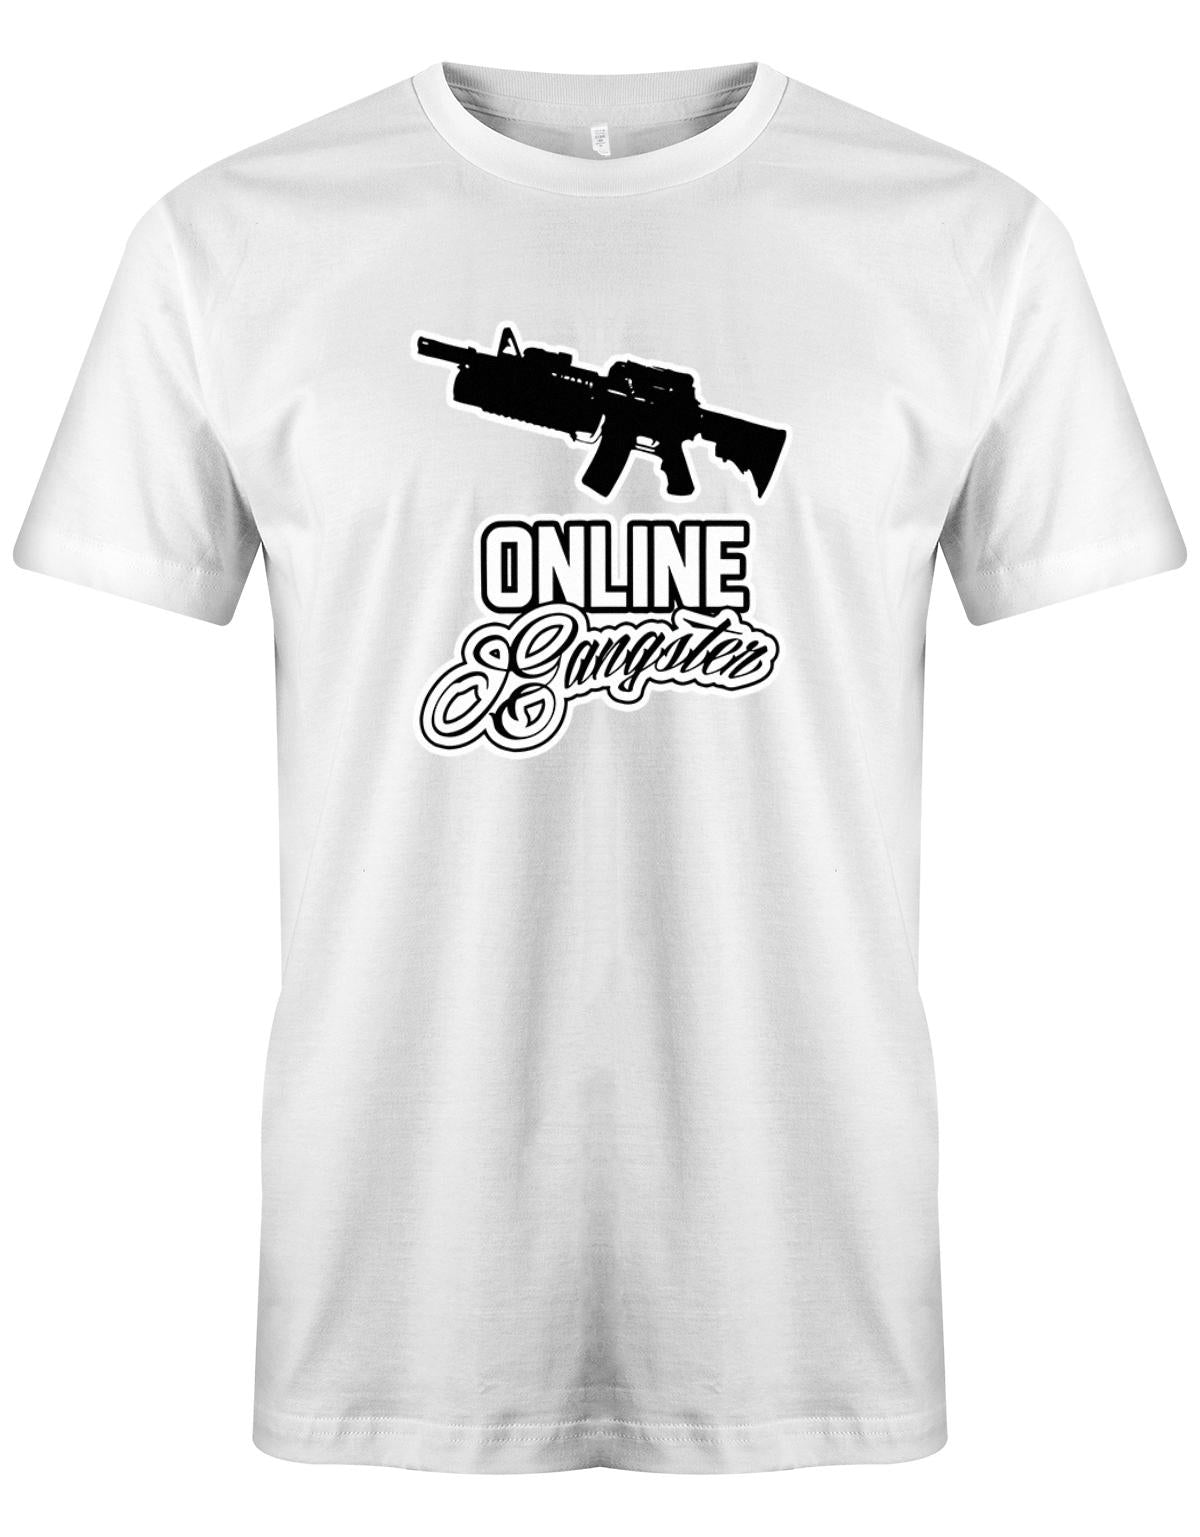 Online-Gangster-Herren-Shirt-Weiss